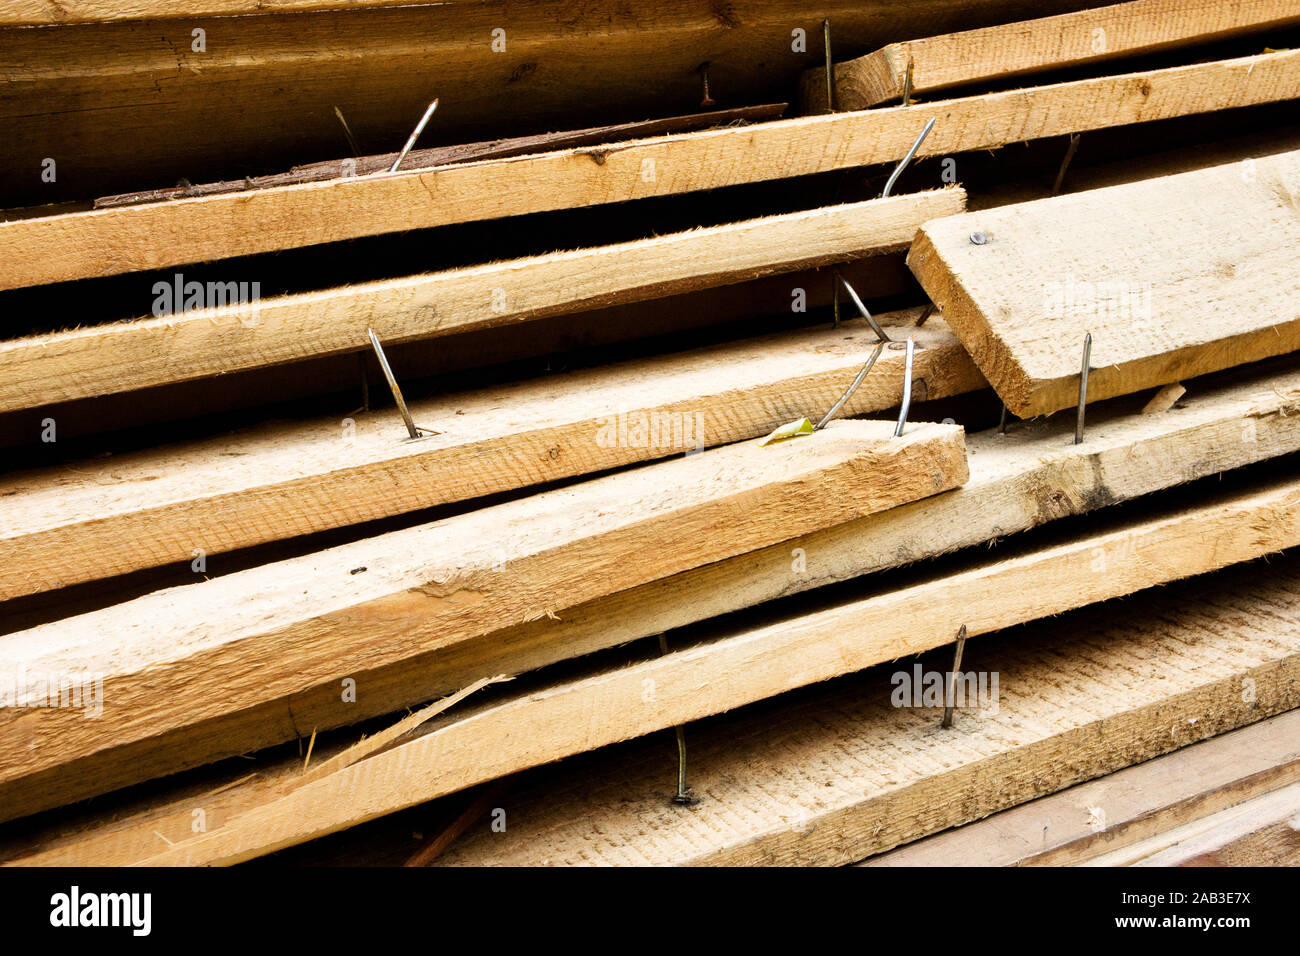 Haufen mit alten Brettern und nach oben stehenden Nägeln |Pile of old boards and protruding nails up| Stock Photo